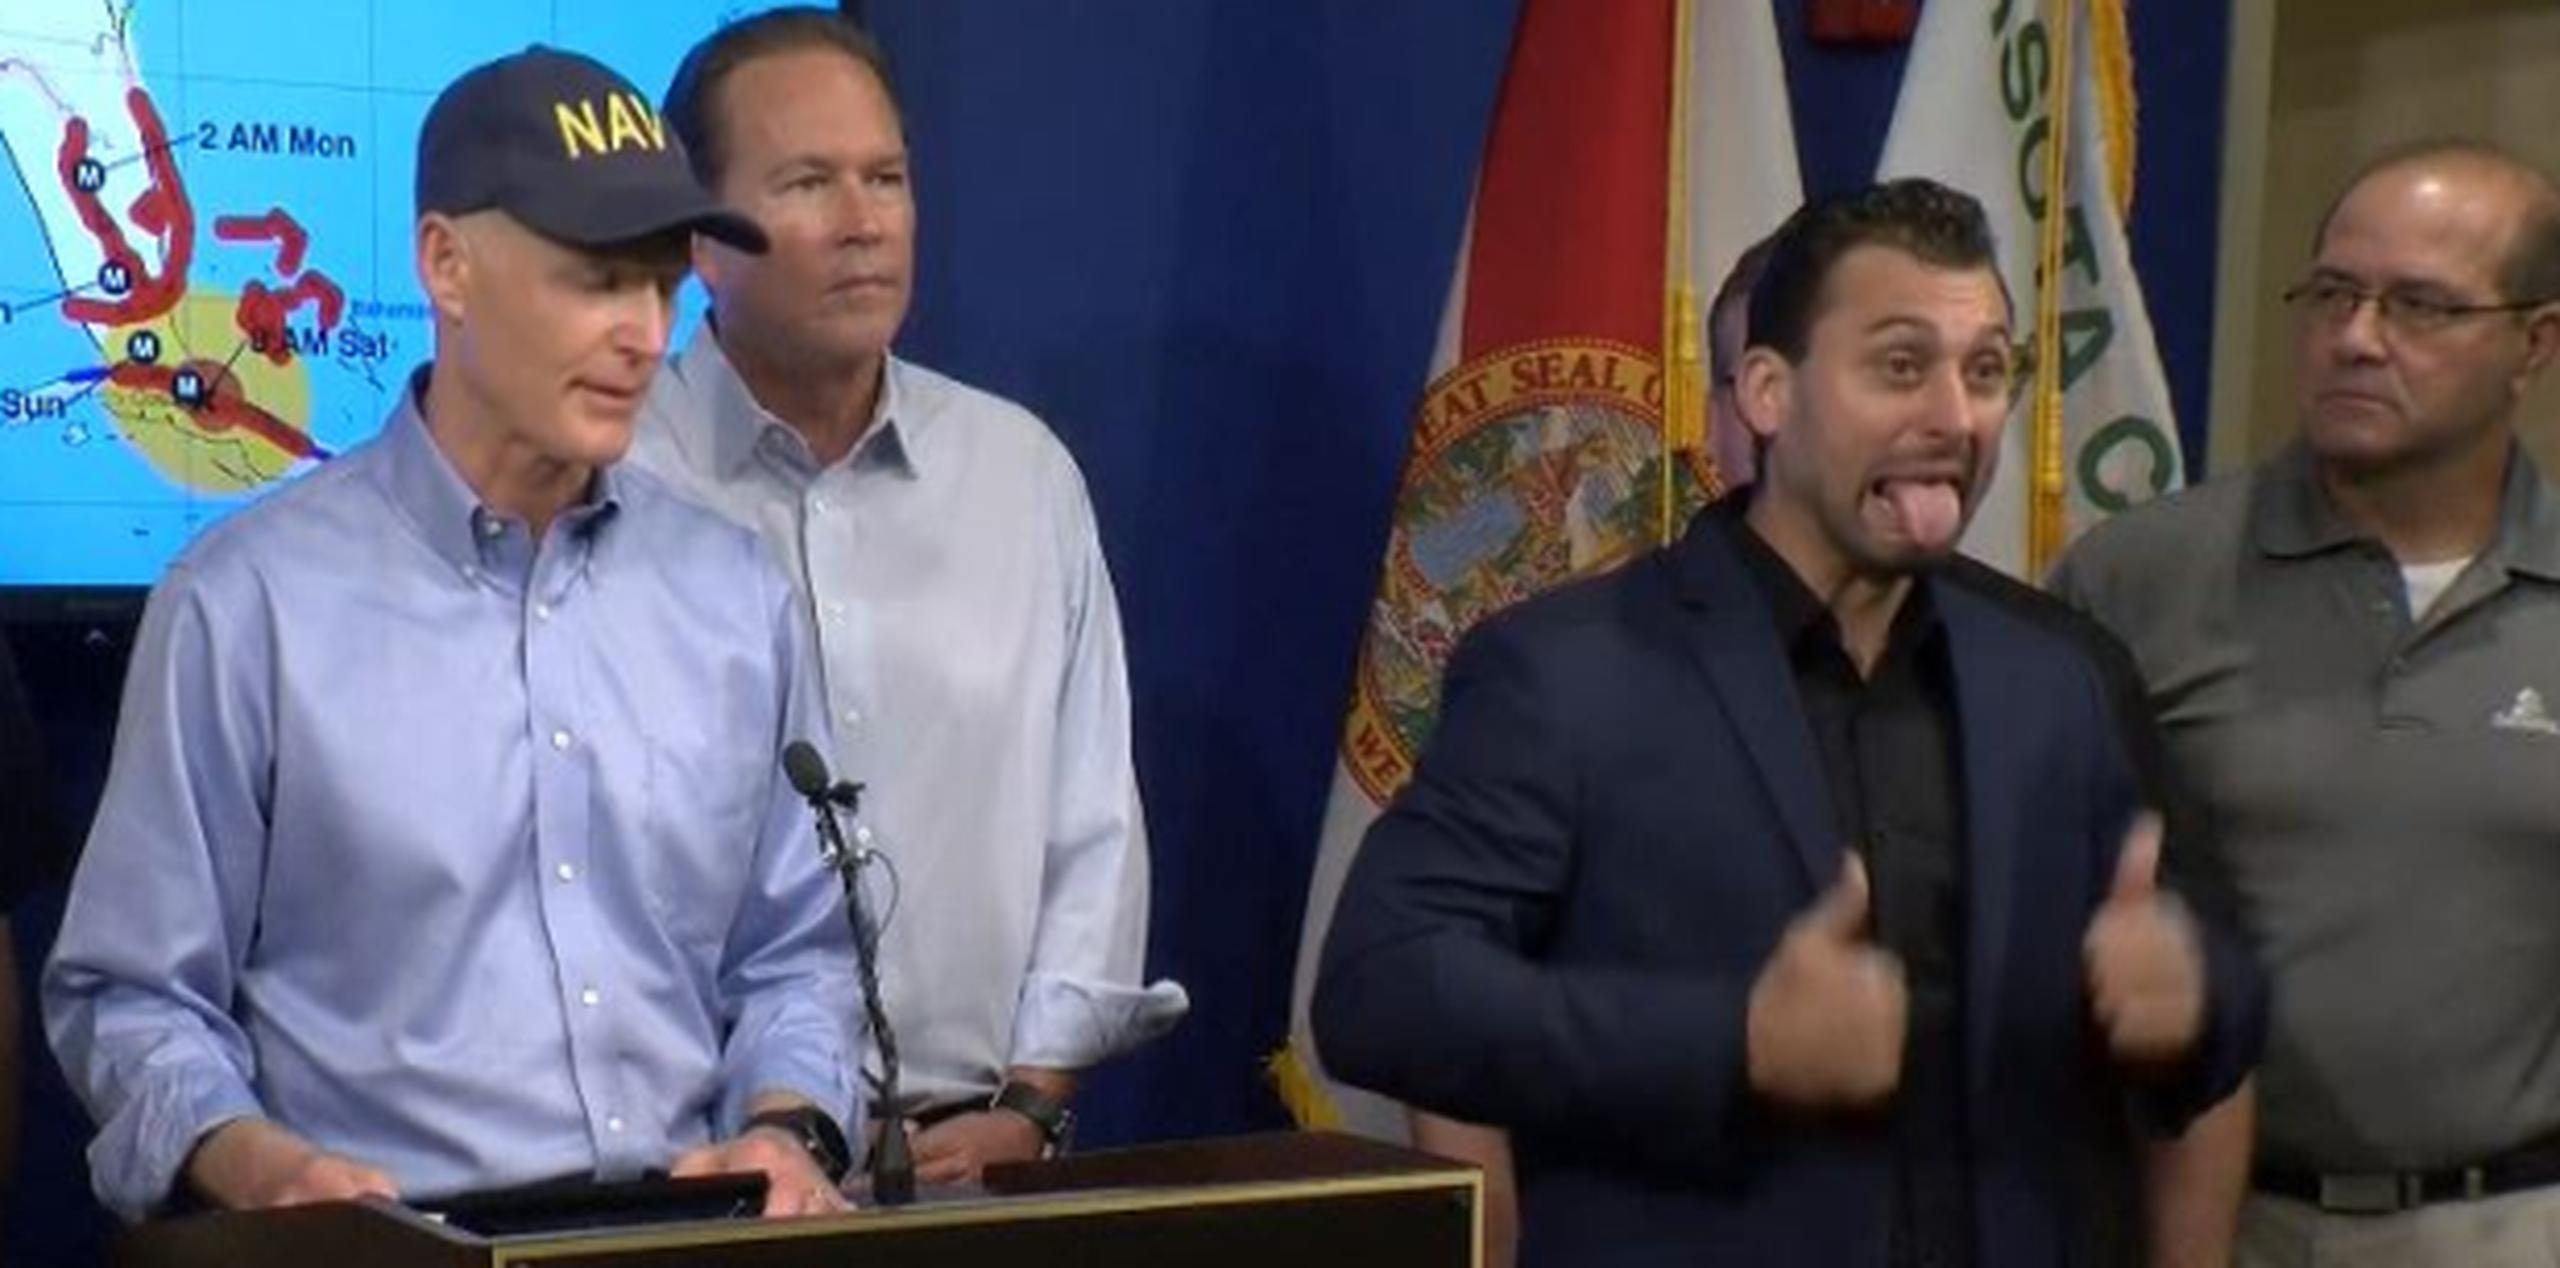 El intérprete estaba junto al gobernador de Florida, Rick Scott. (YouTube)